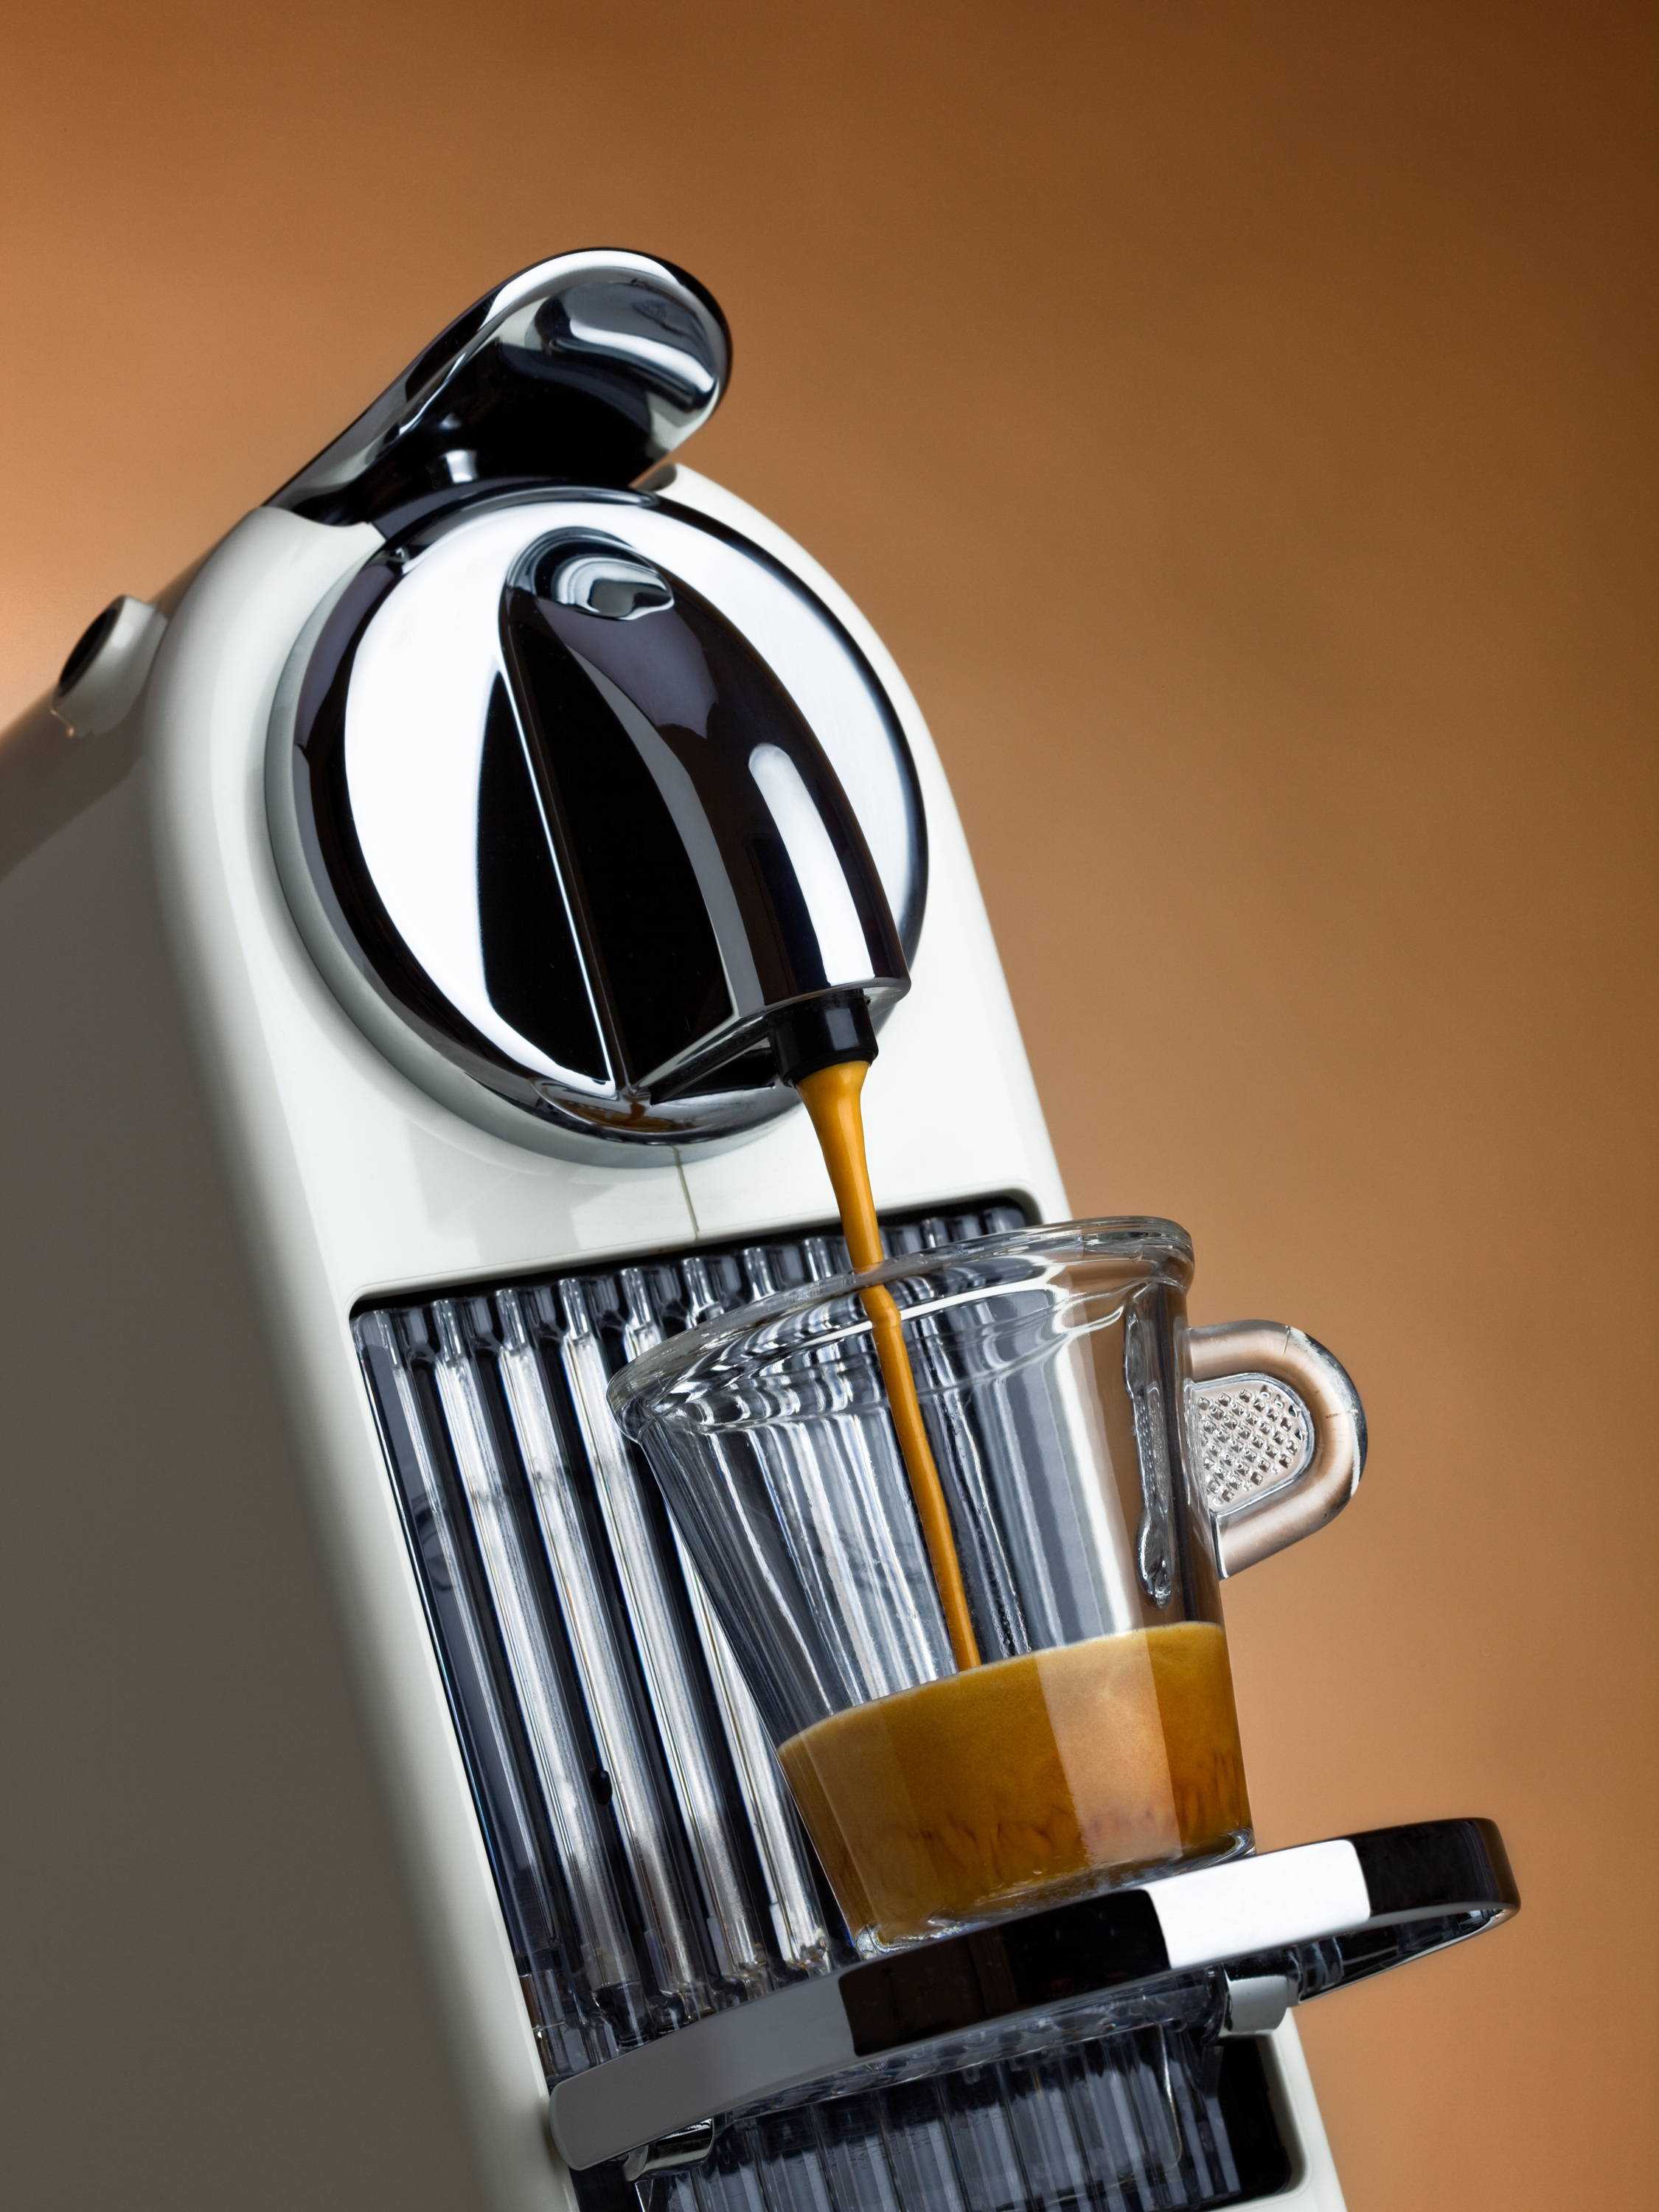 How to Reset and Program Nespresso Gourmesso Coffee